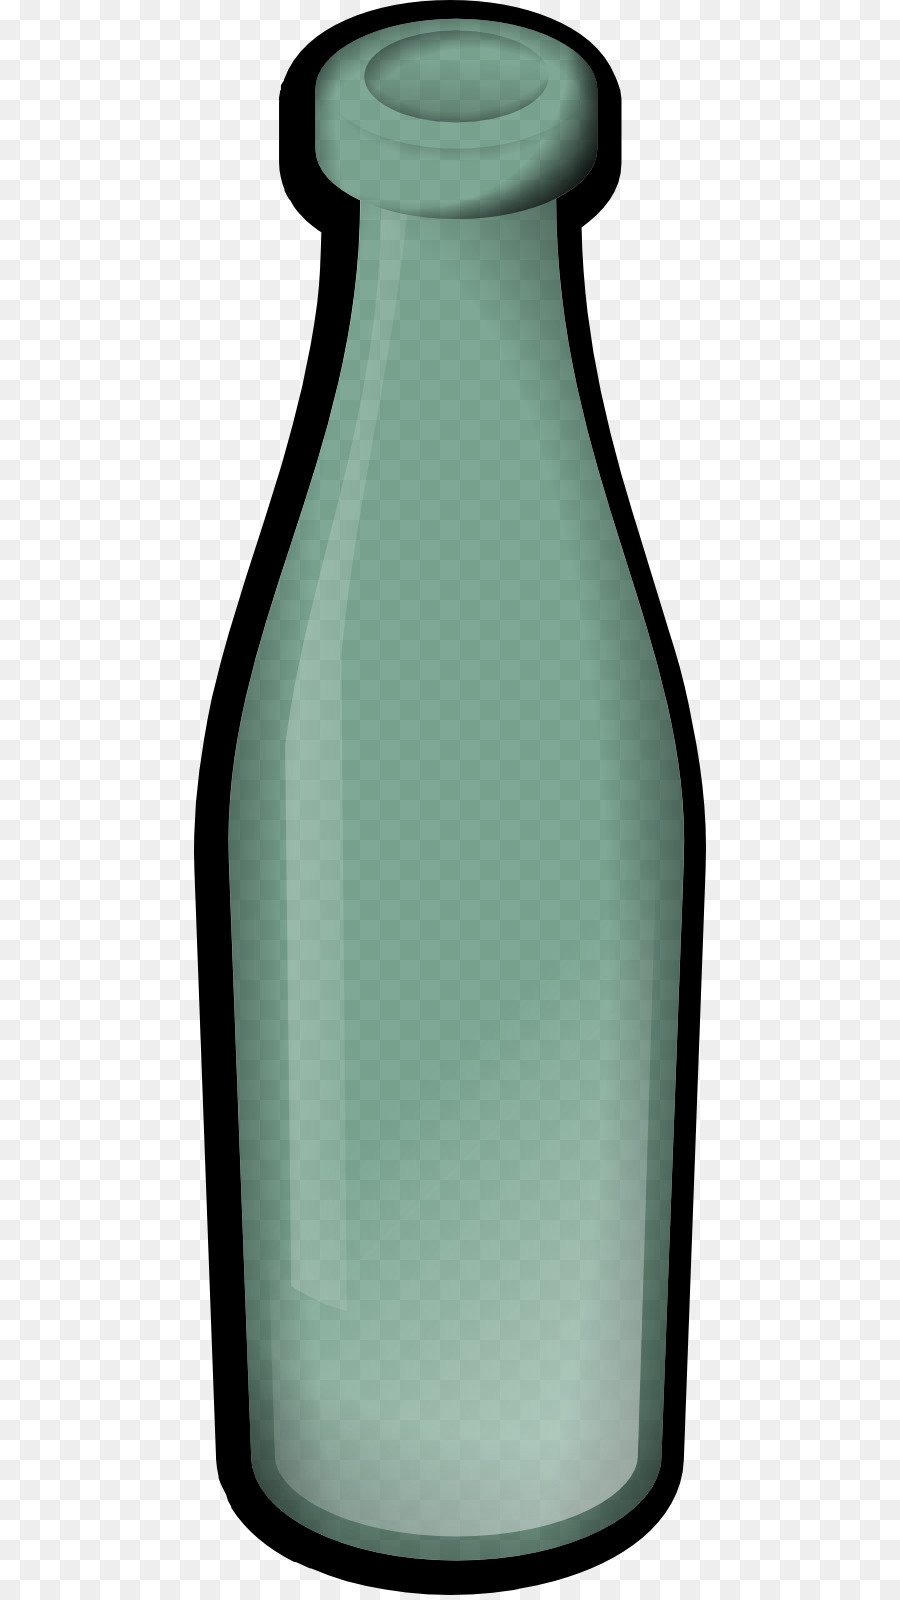 Bottiglia di vetro del Computer Icone clipart - bottiglia di vetro